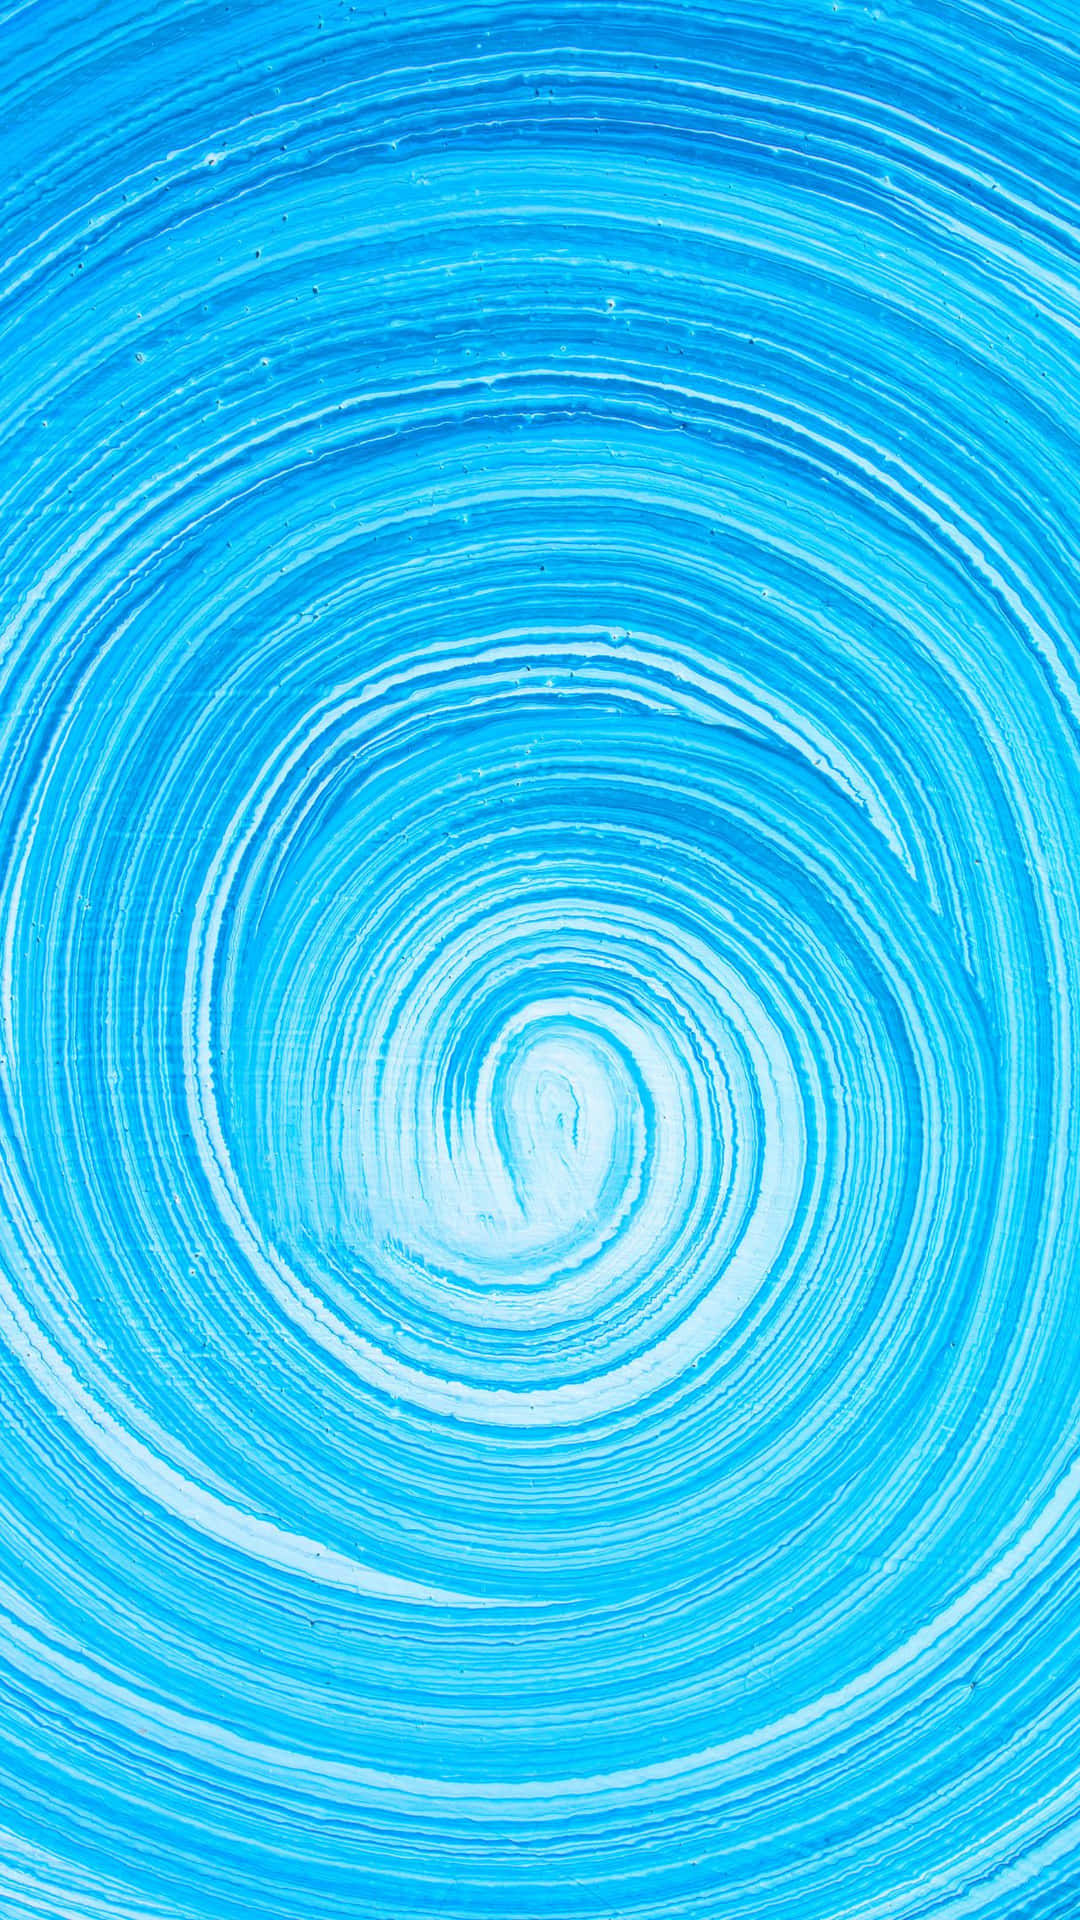 Shimmering blue swirl design